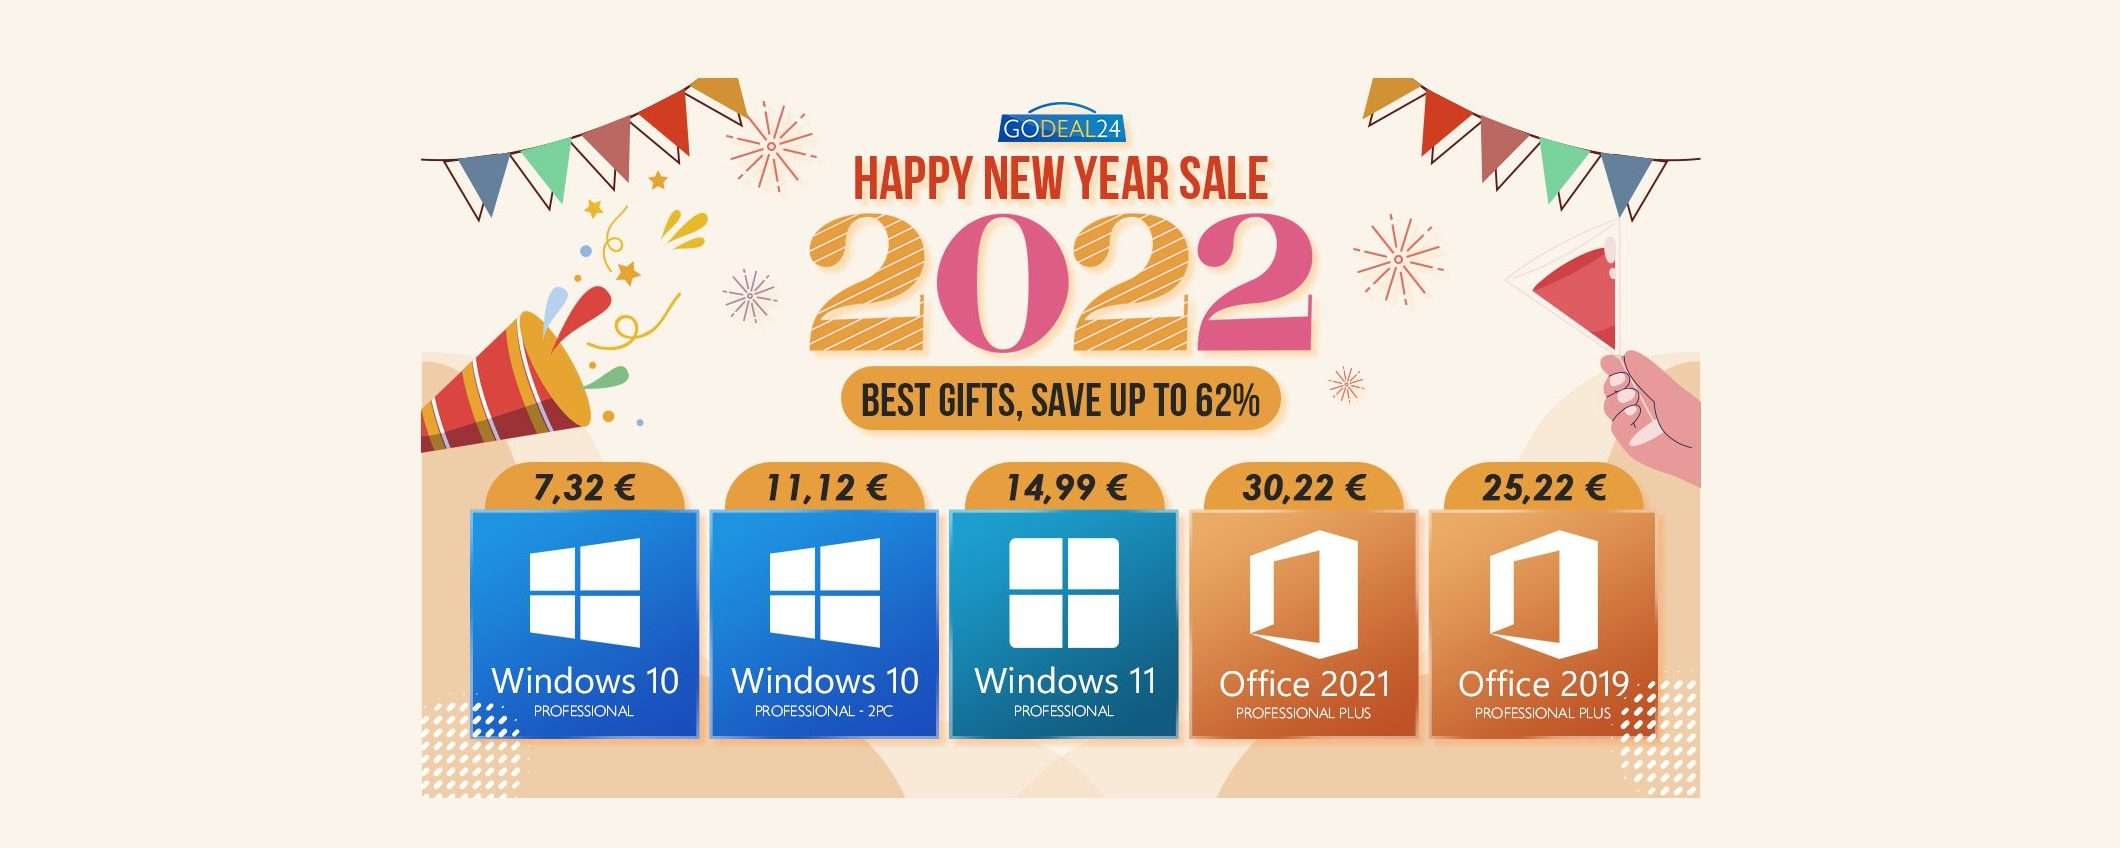 Saldi GoDeal24 di Capodanno: Windows 10 Pro 7,32€, Office 2021 Pro 15€